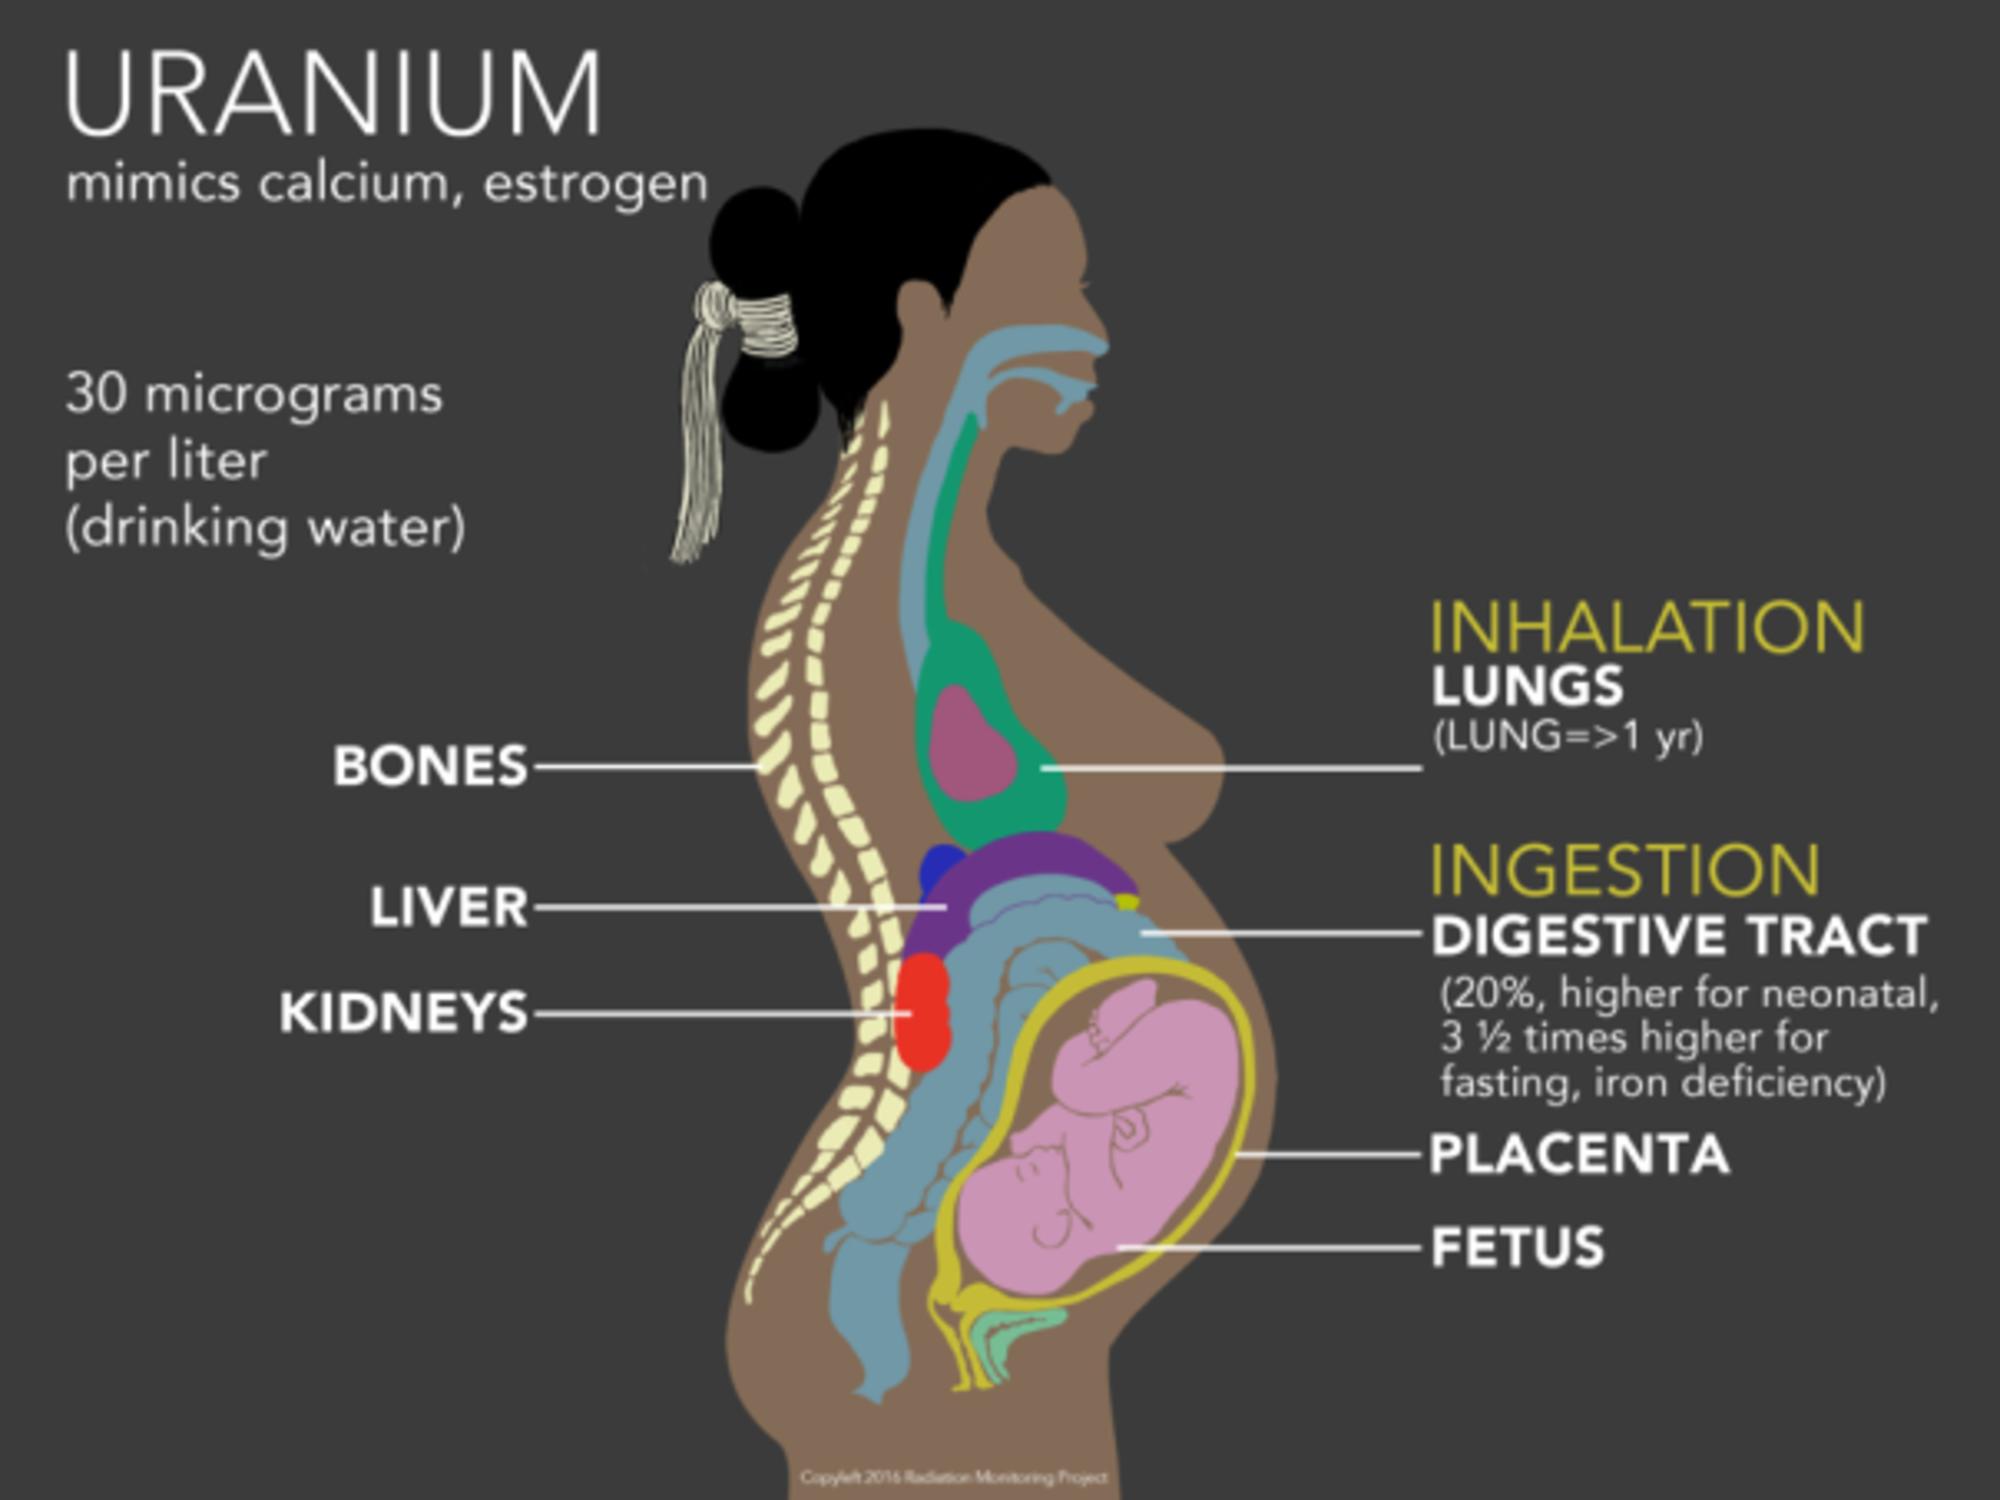 Consecuencias del uranio en el cuerpo de una mujer embarazado. Imagen cortesía de Radiation Monitoring Project. 